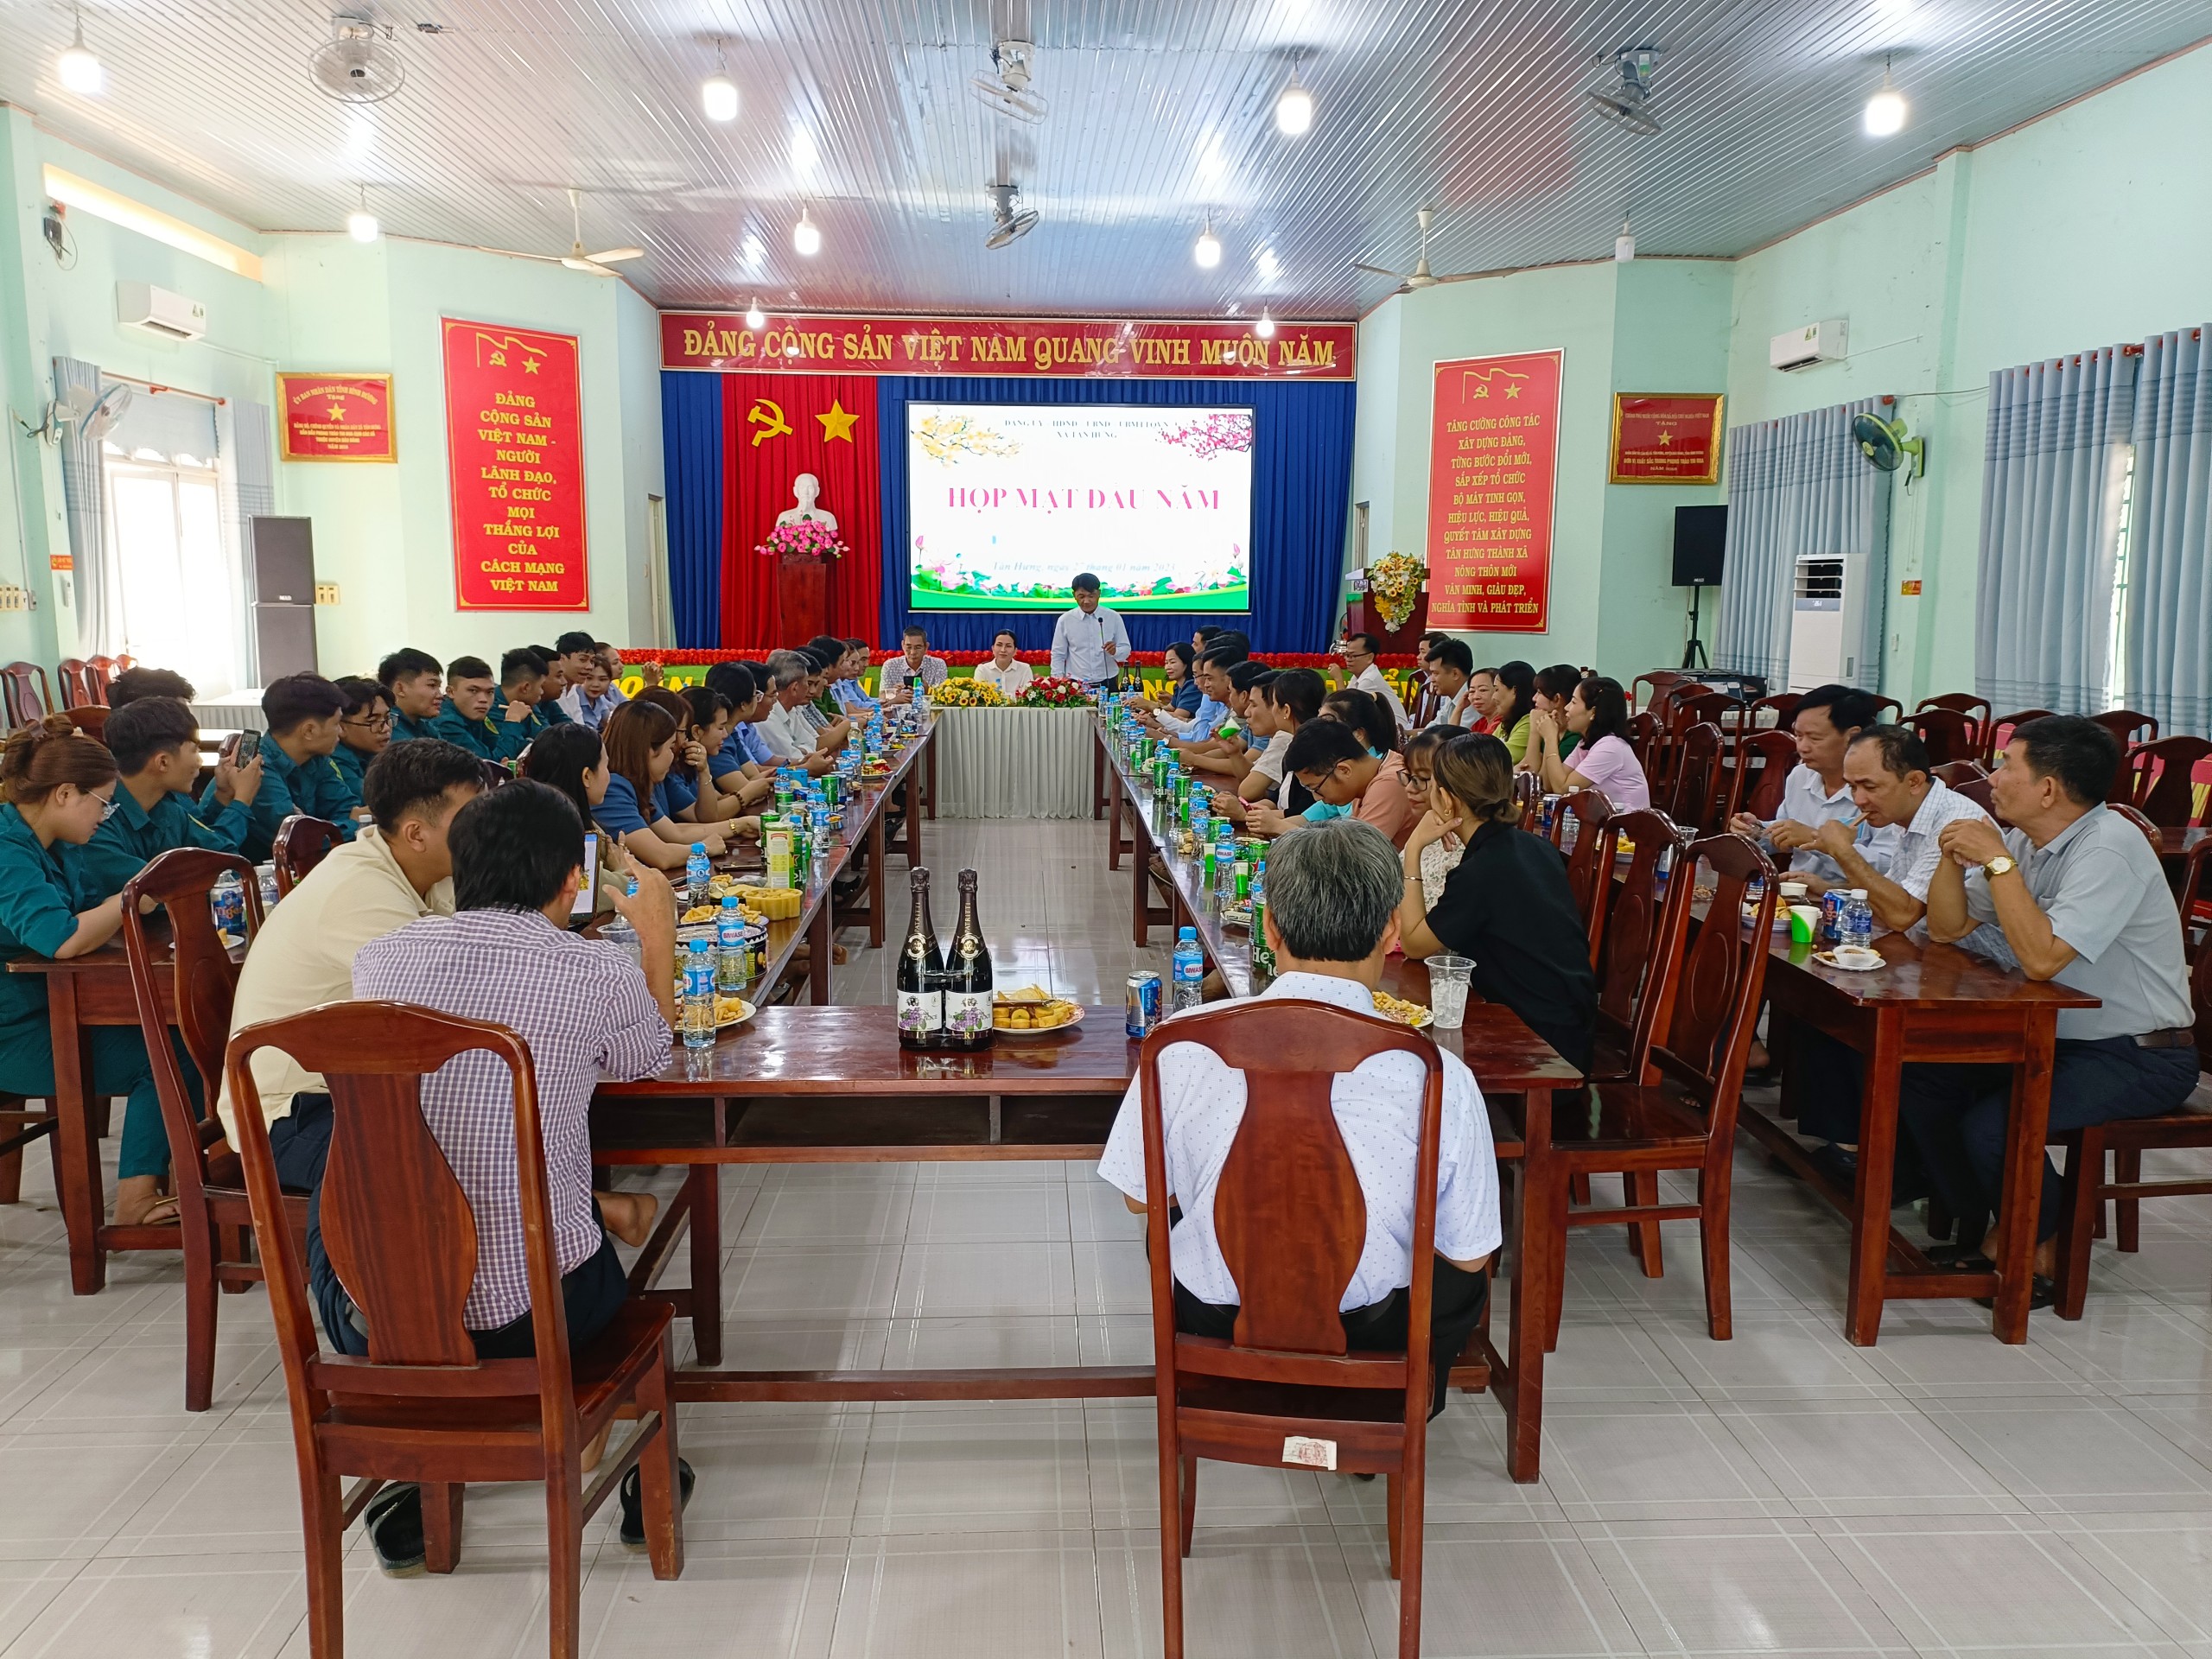 Lãnh đạo xã Tân Hưng họp mặt cán bộ, công chức, người lao động đầu xuân Qúy Mão Năm 2023